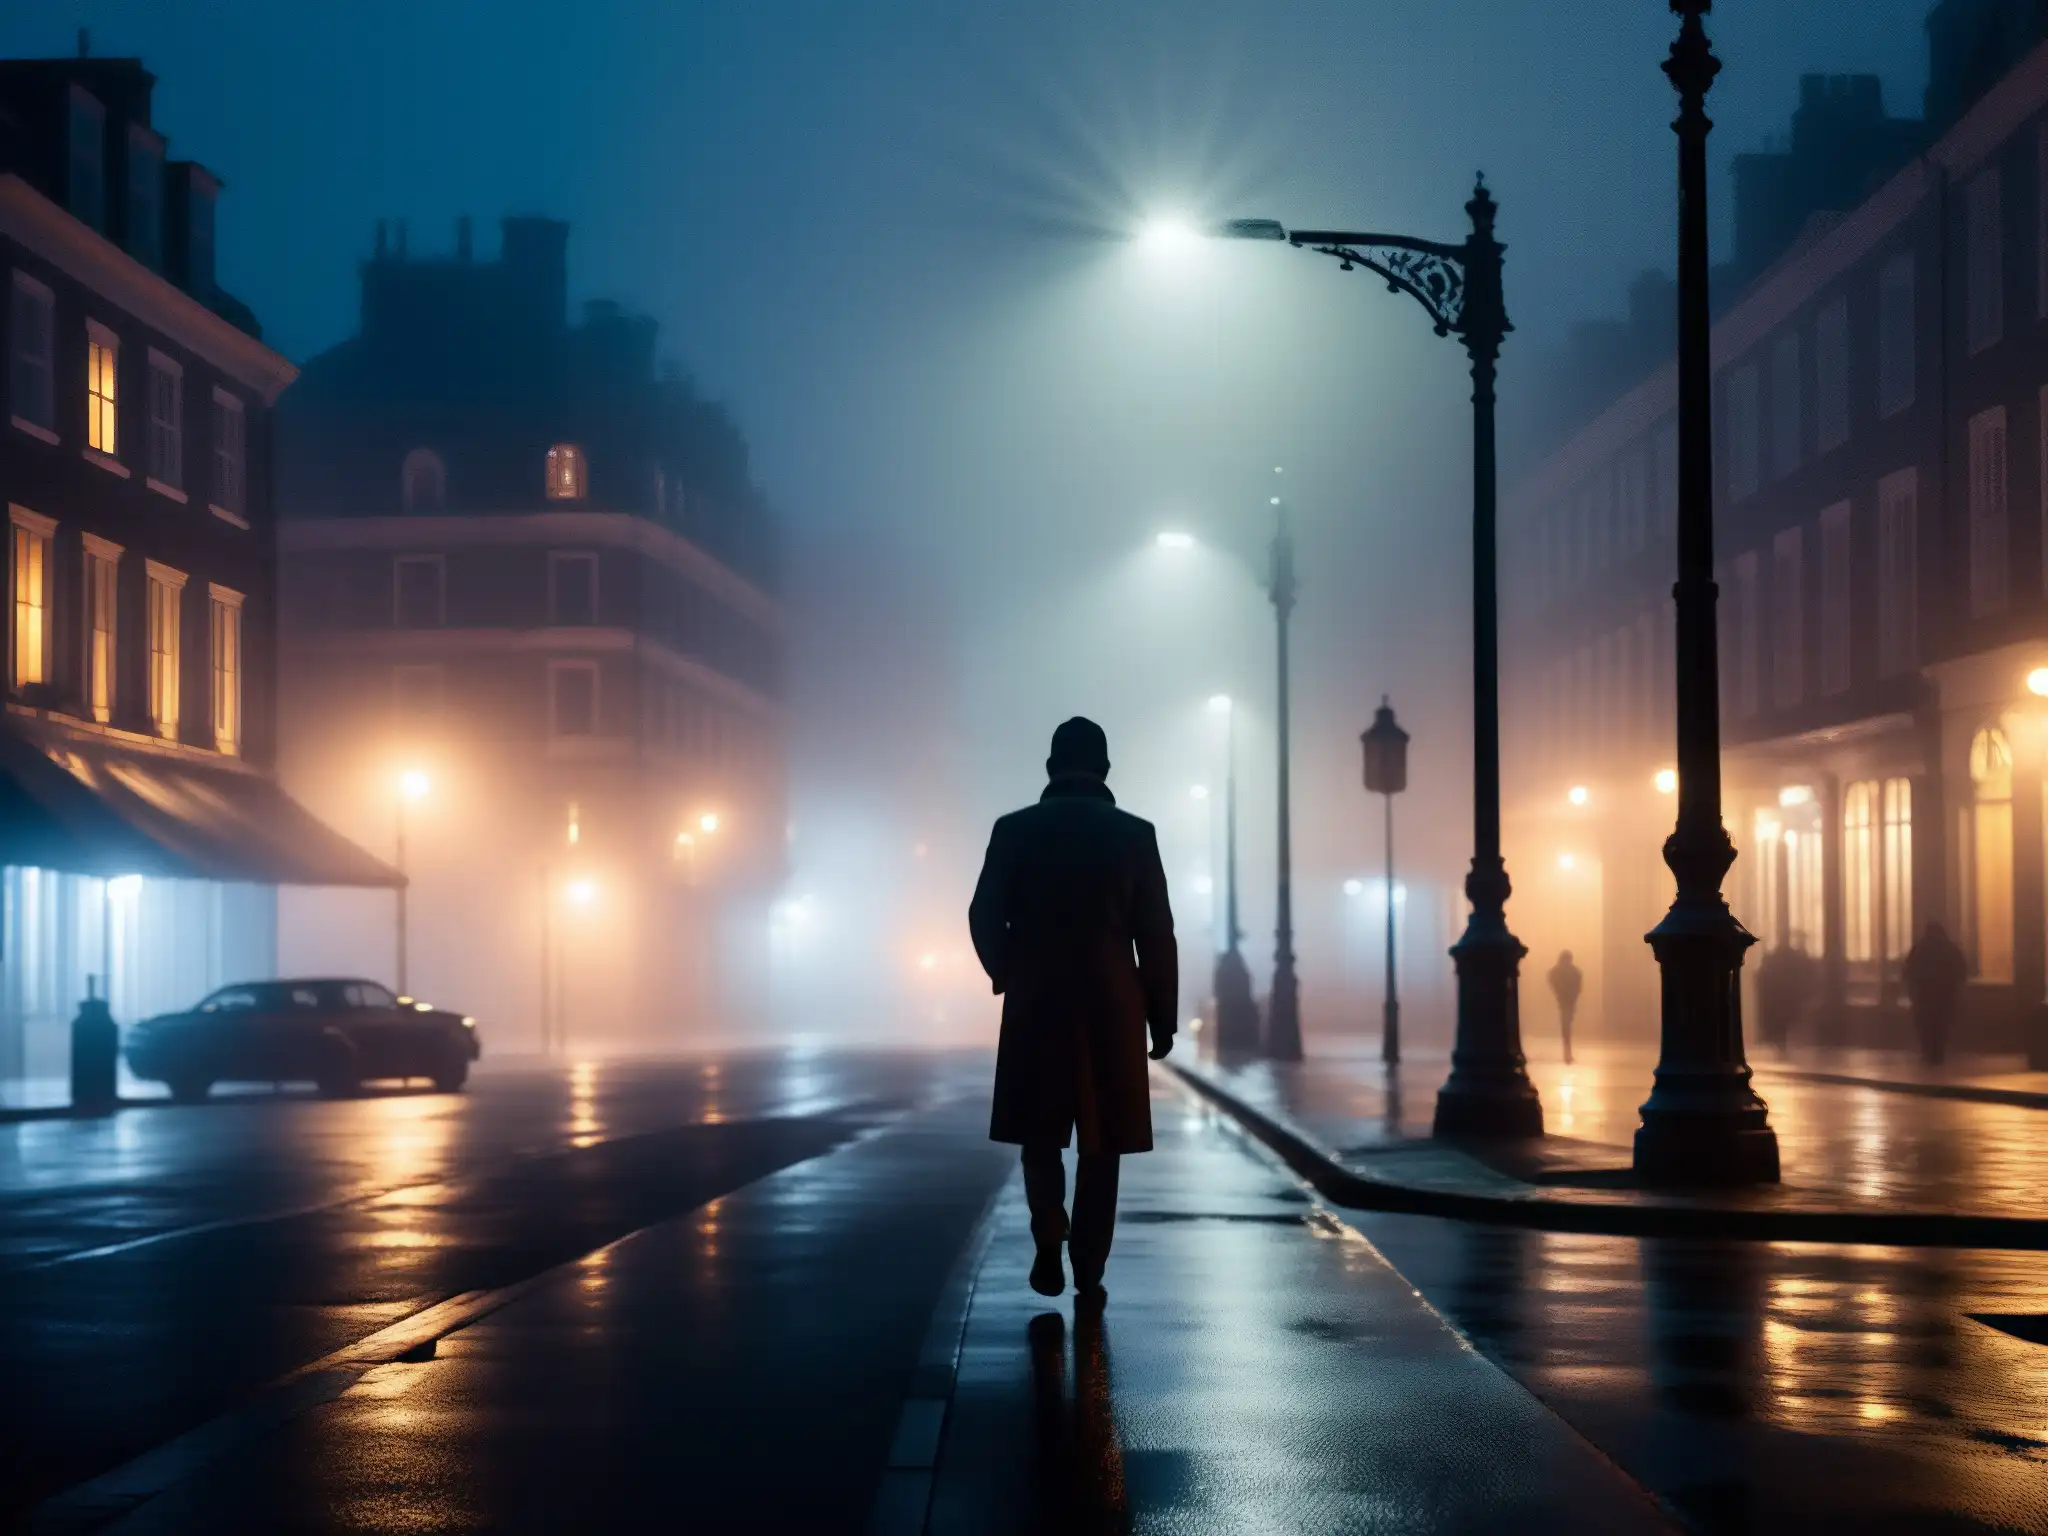 Una misteriosa figura se perfila en una tétrica calle nocturna entre la neblina y las luces